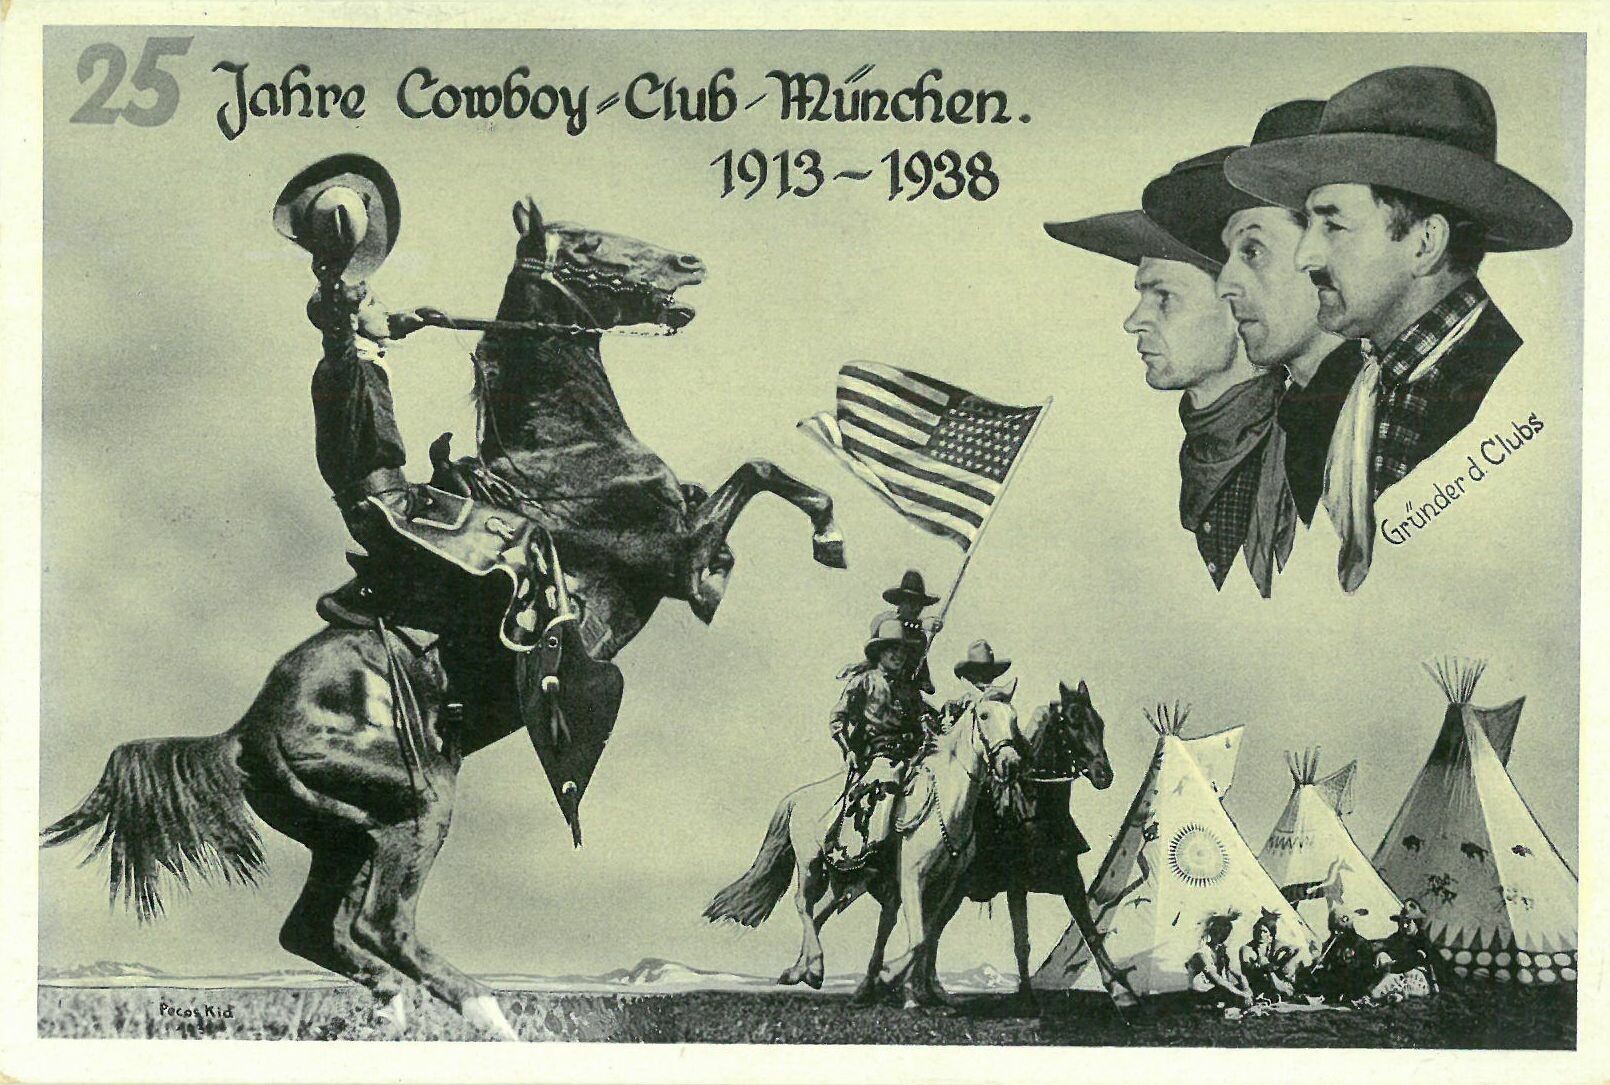 25 Jahre Cowboy-Club-München; beschrieben (Karl-May-Museum gGmbH RR-R)